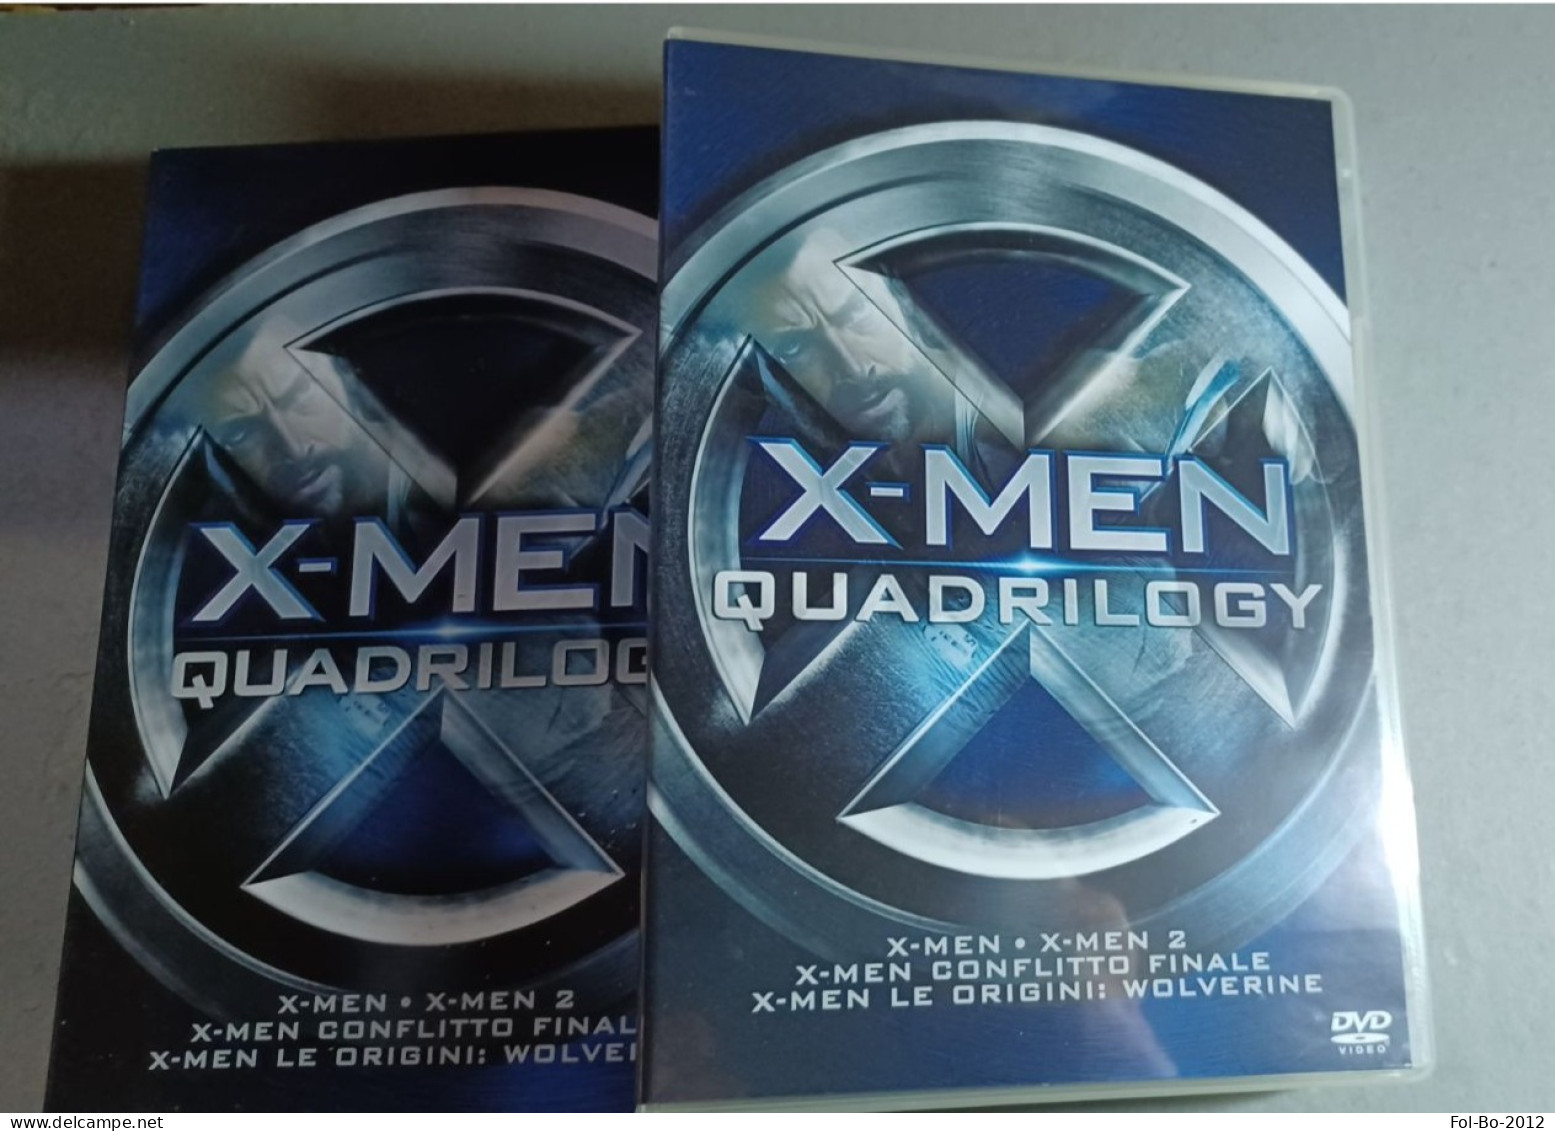 X-MEN Quadrilogy DVD.MARVEL - Fantasía